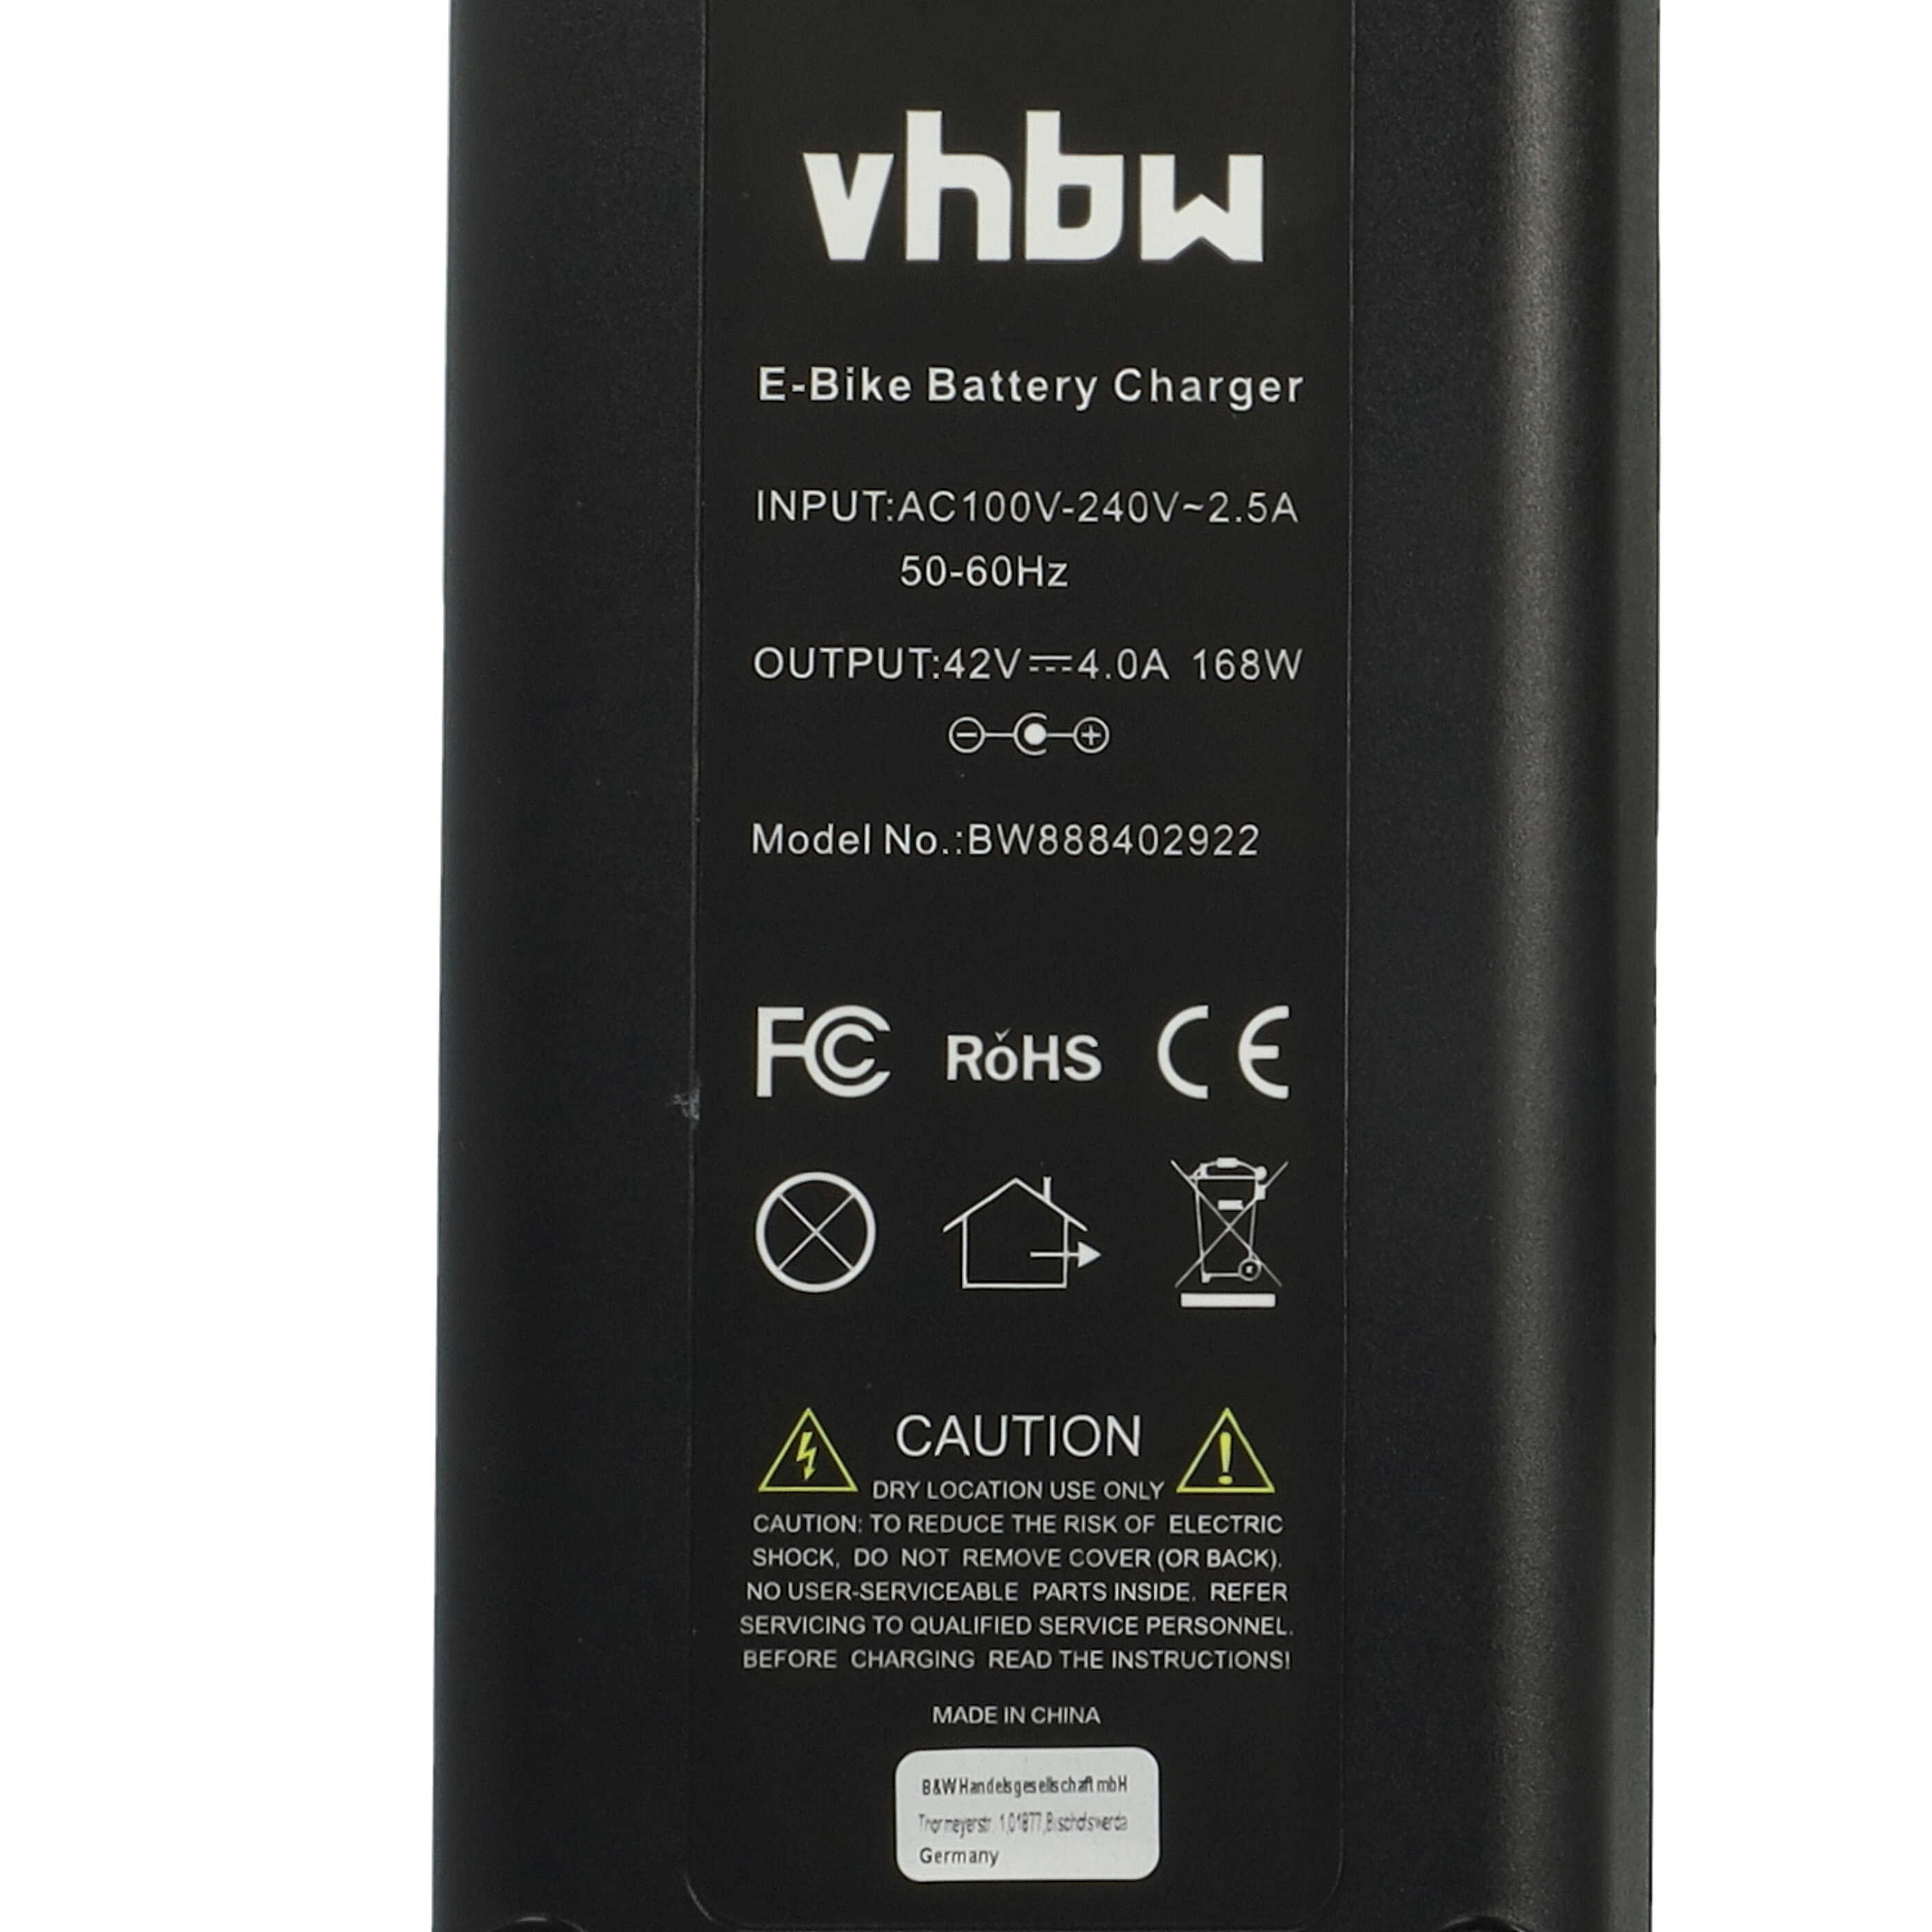 Chargeur remplace Bosch 0.275.007.905, 0 275 007 905, 0275007905 pour batterie e-bike - prise4,0 A